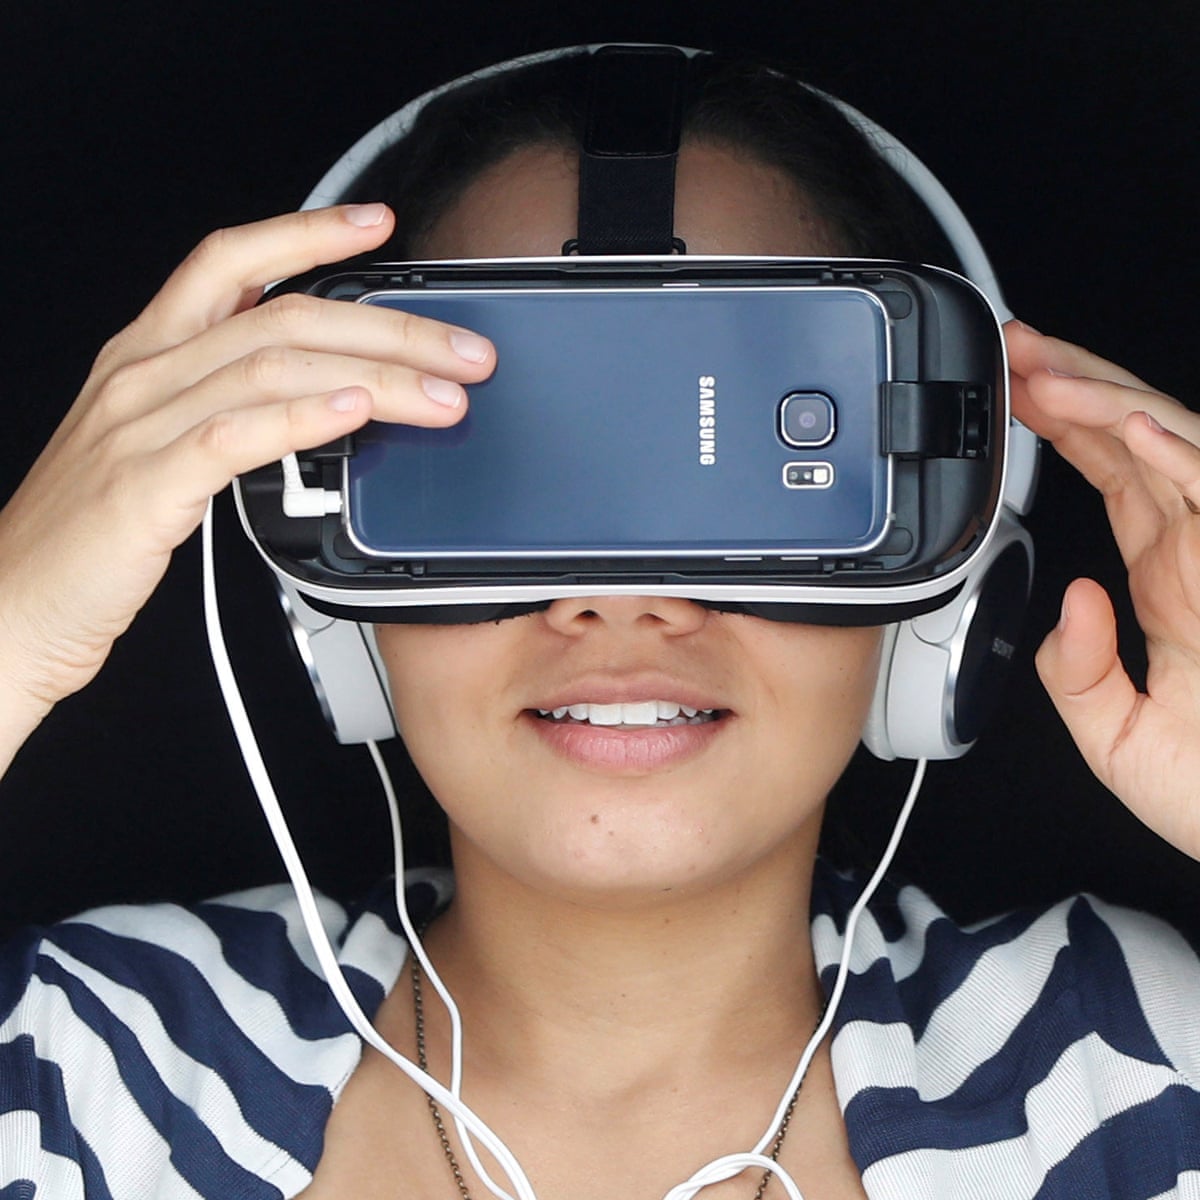 مرئي إعادة مال ذوبان  The complete guide to virtual reality – everything you need to get started  | Virtual reality | The Guardian